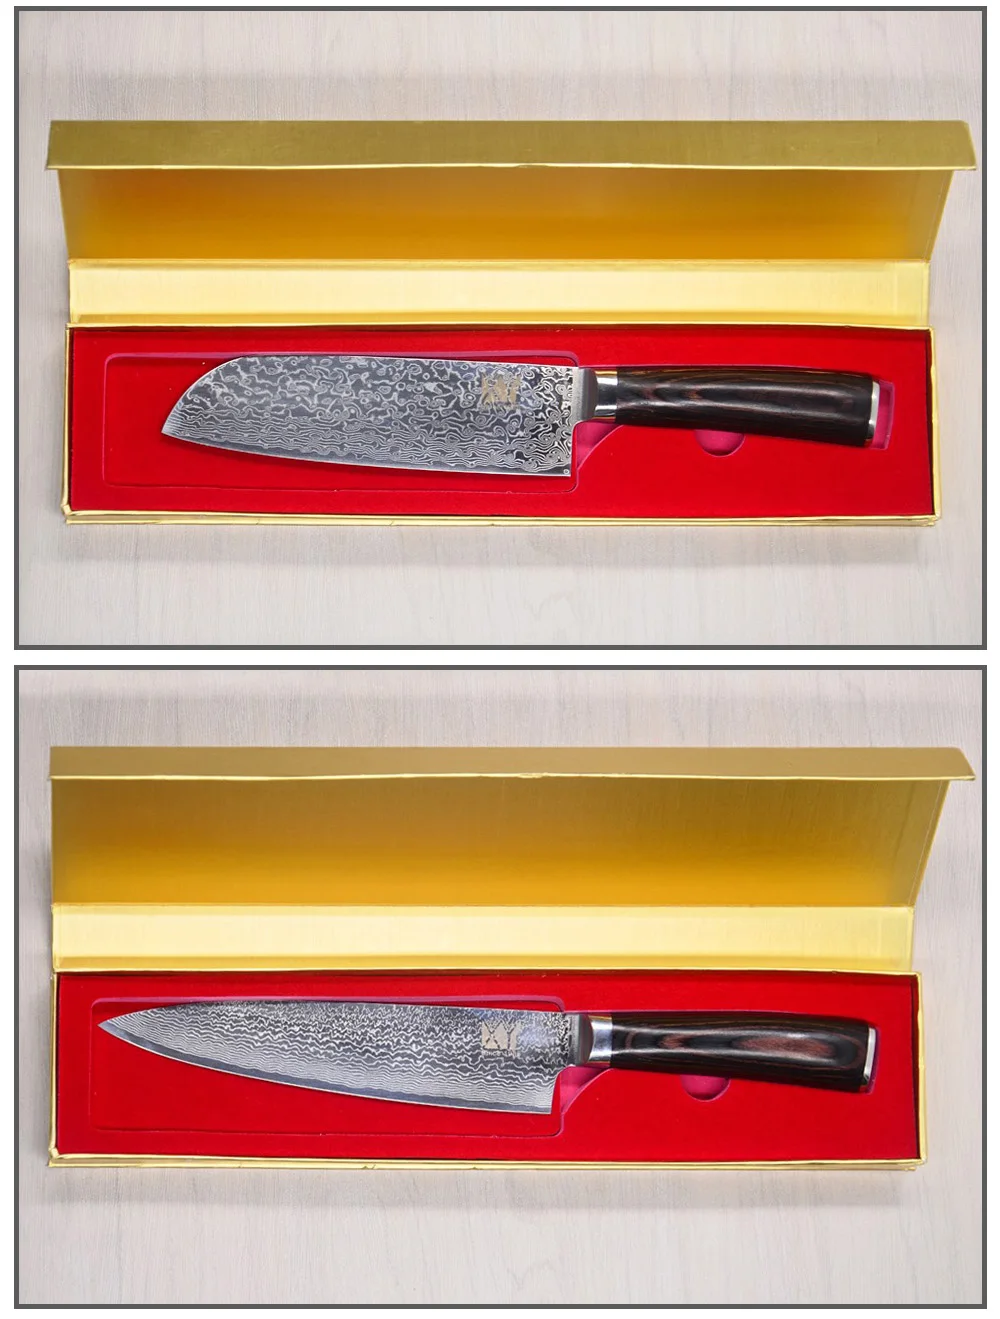 XYj Дамасская сталь кухонный нож черный золотой цвет подарочная коробка многофункциональный нож из нержавеющей стали коробка кухонные инструменты для приготовления пищи